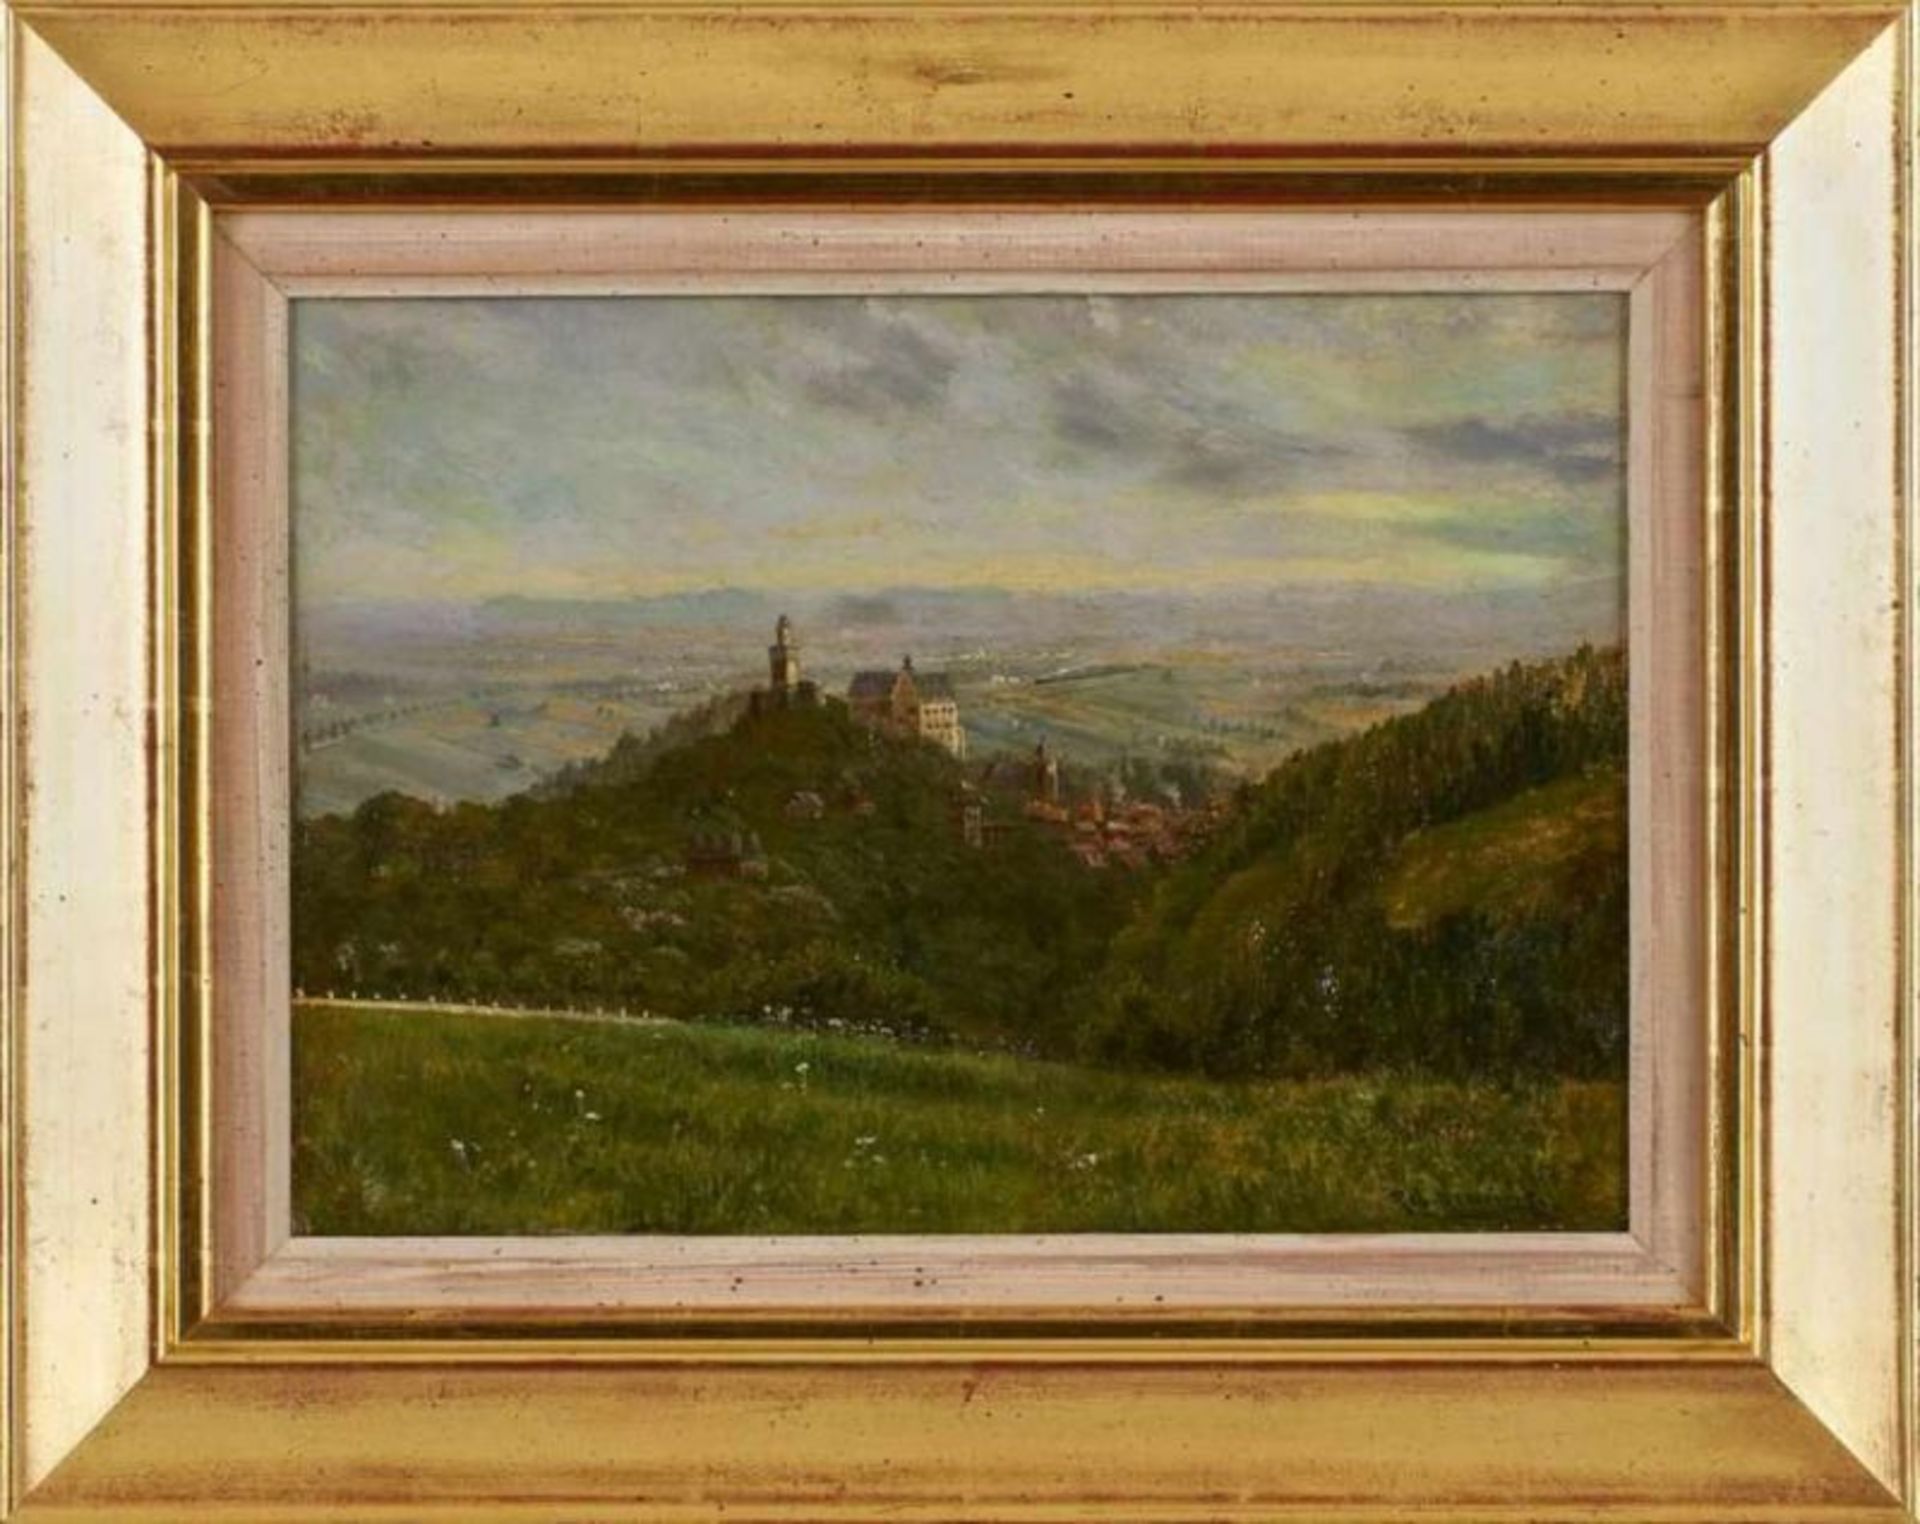 Gemälde Robert Henning 1875 Frankfurt, gest. 1930 "Kronberg mit Dampfeisenbahn in der Ebene" u. - Bild 3 aus 3